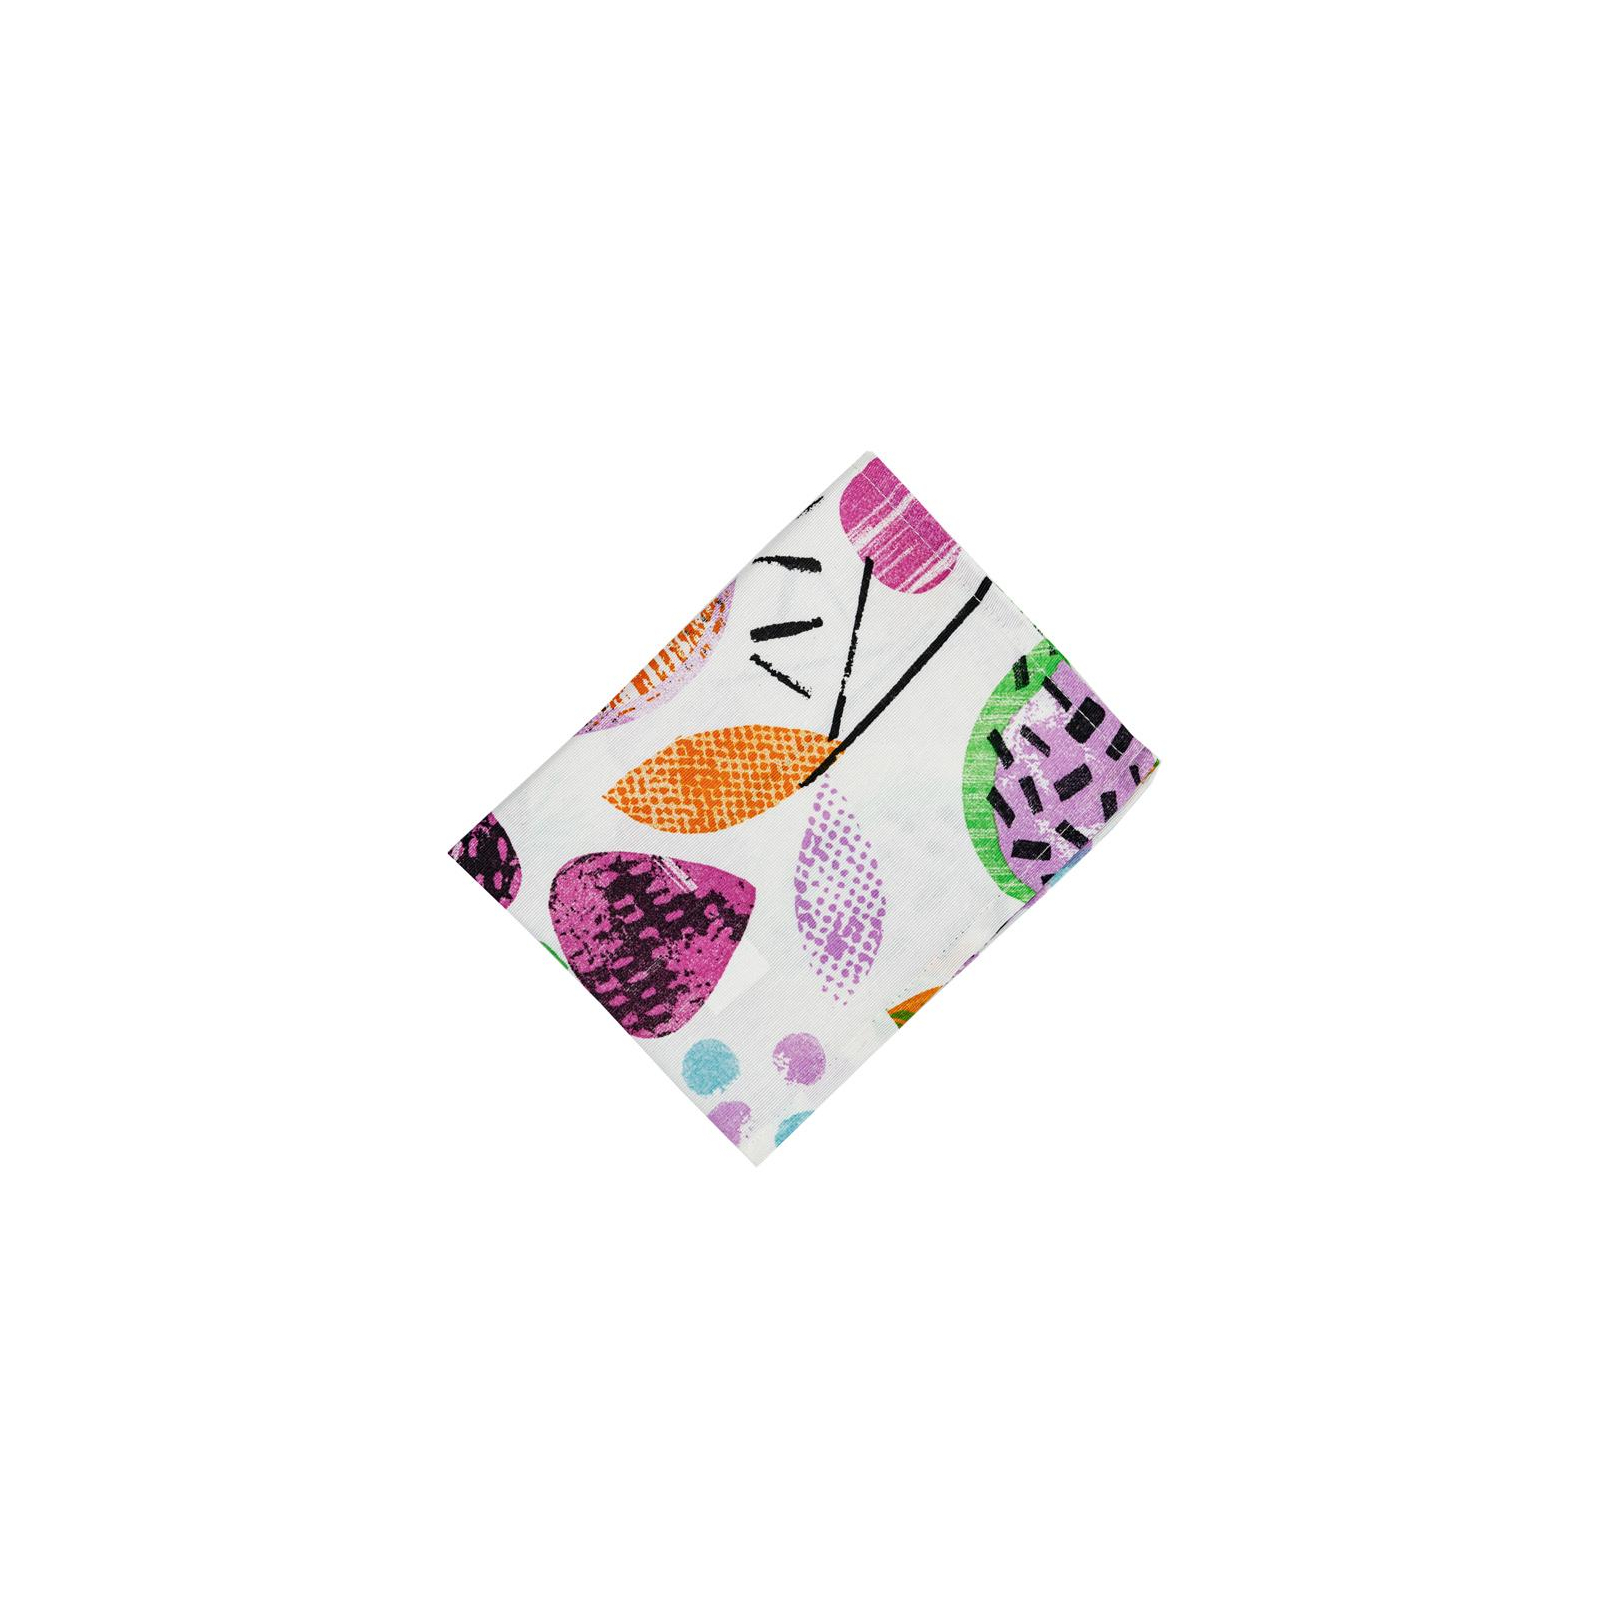 Салфетка на стол Прованс Violet cherries 35х45 см (032940)